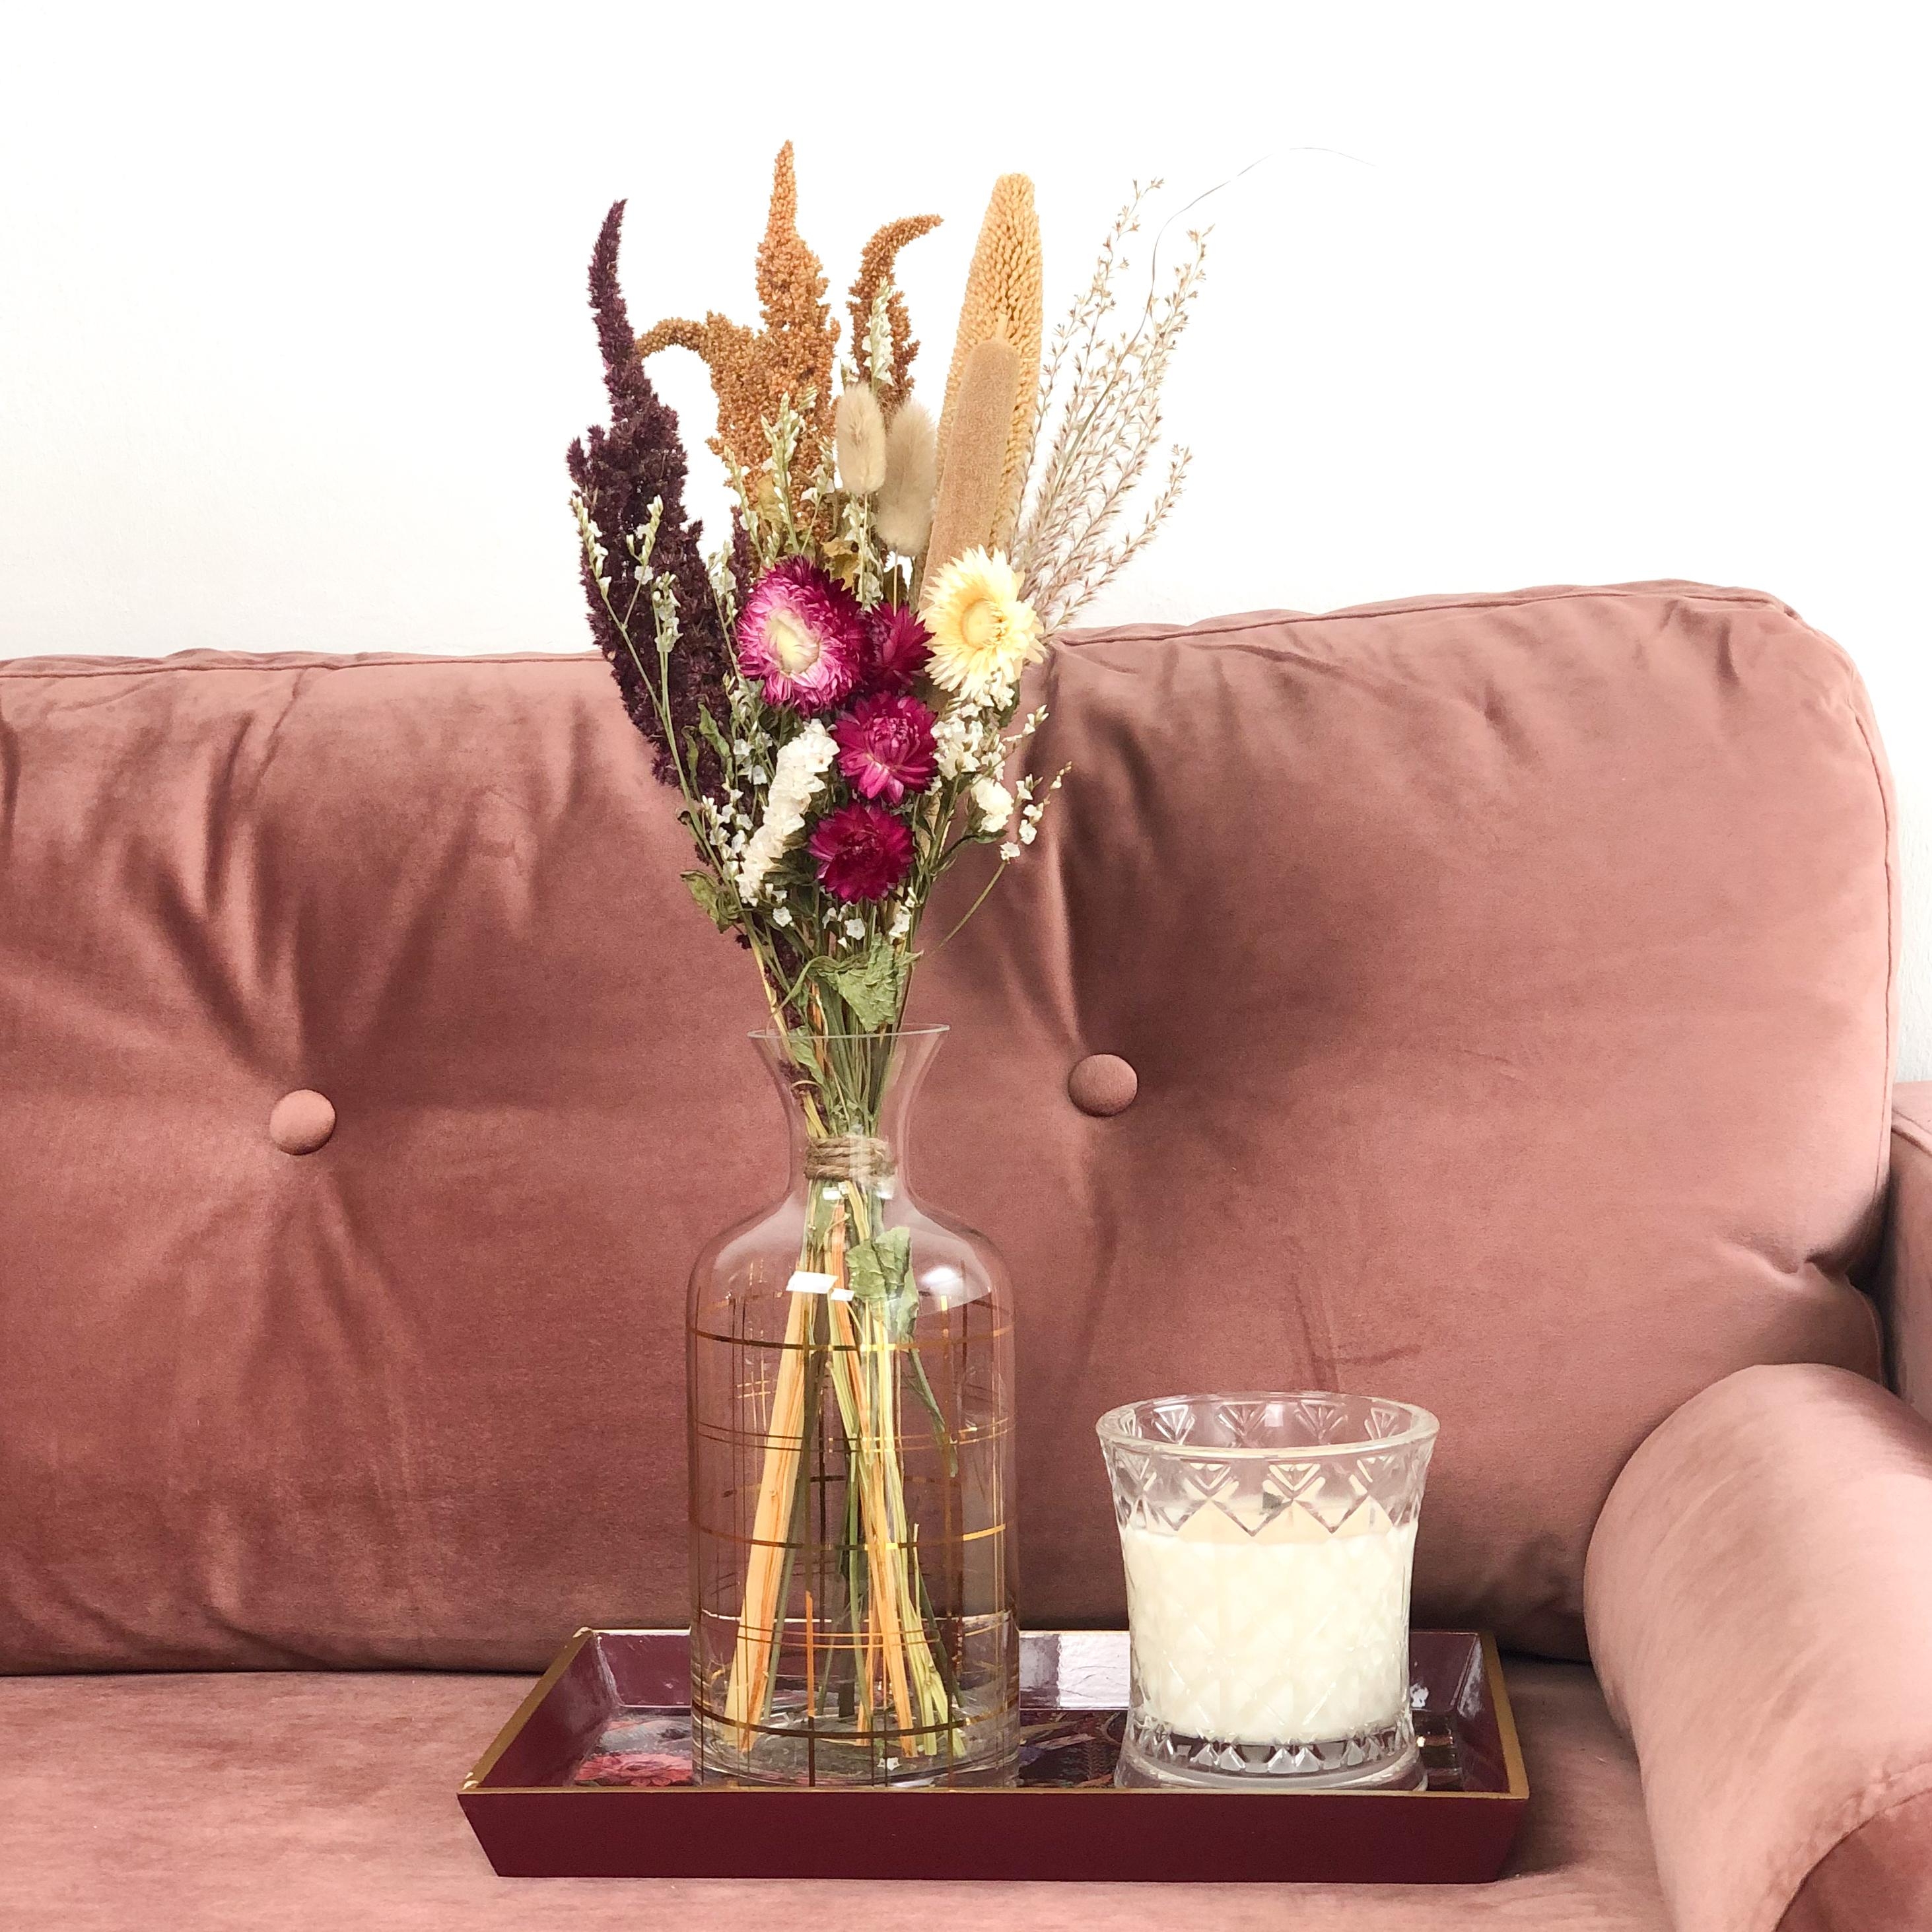 Wir machen es uns gemütlich auf der Couch mit Trockenblumen
> www.madamefleurs.com
#couchstyle #dekoblumen #duftkerzen